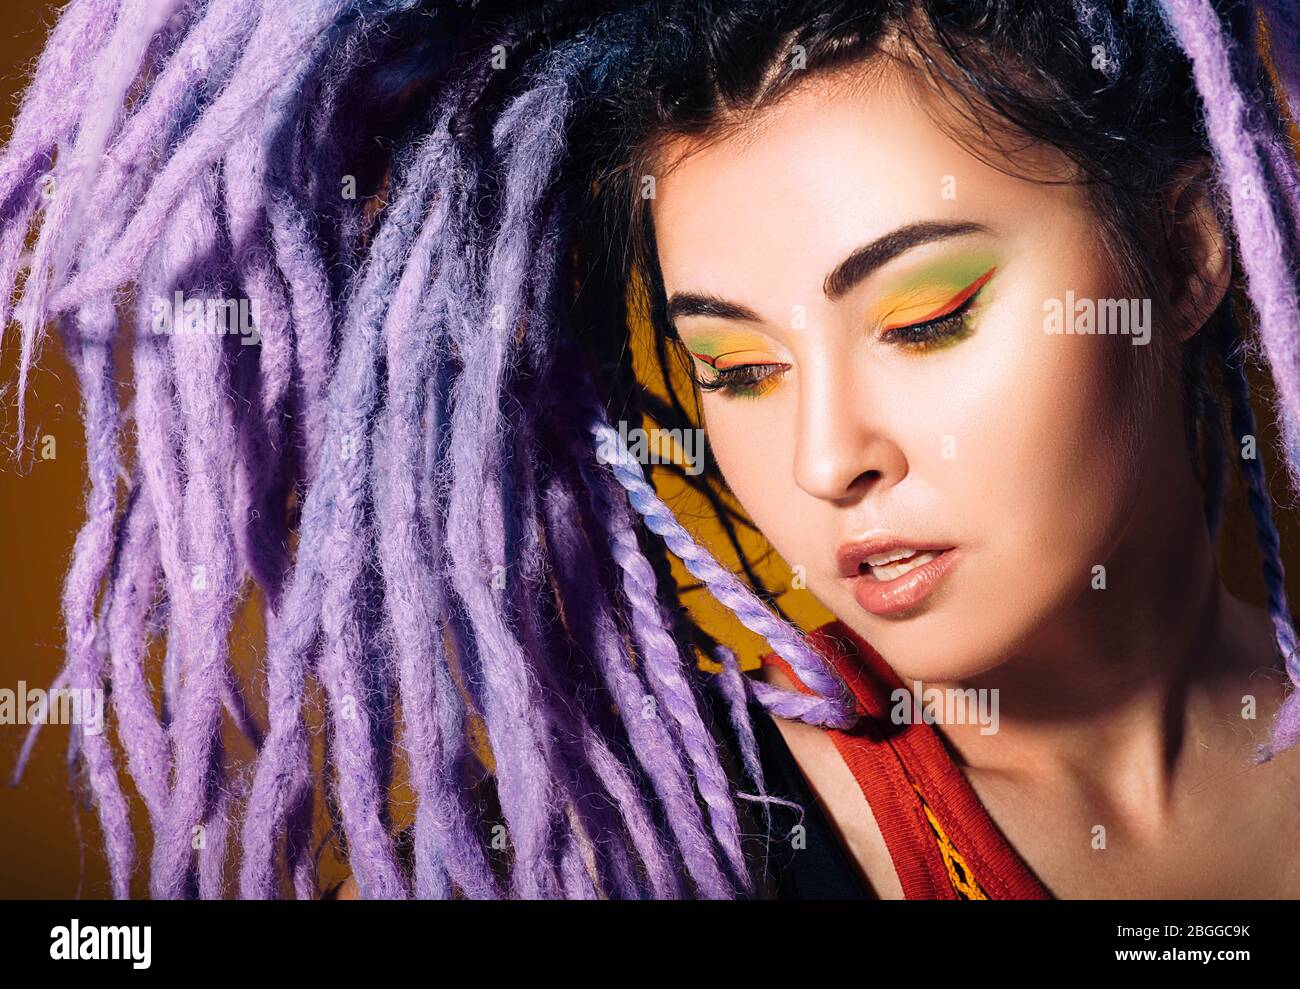 Portrait Frau mit violetten Dreadlocks und farbigen Make-up. Style, Frisuren und Make-up Stockfoto